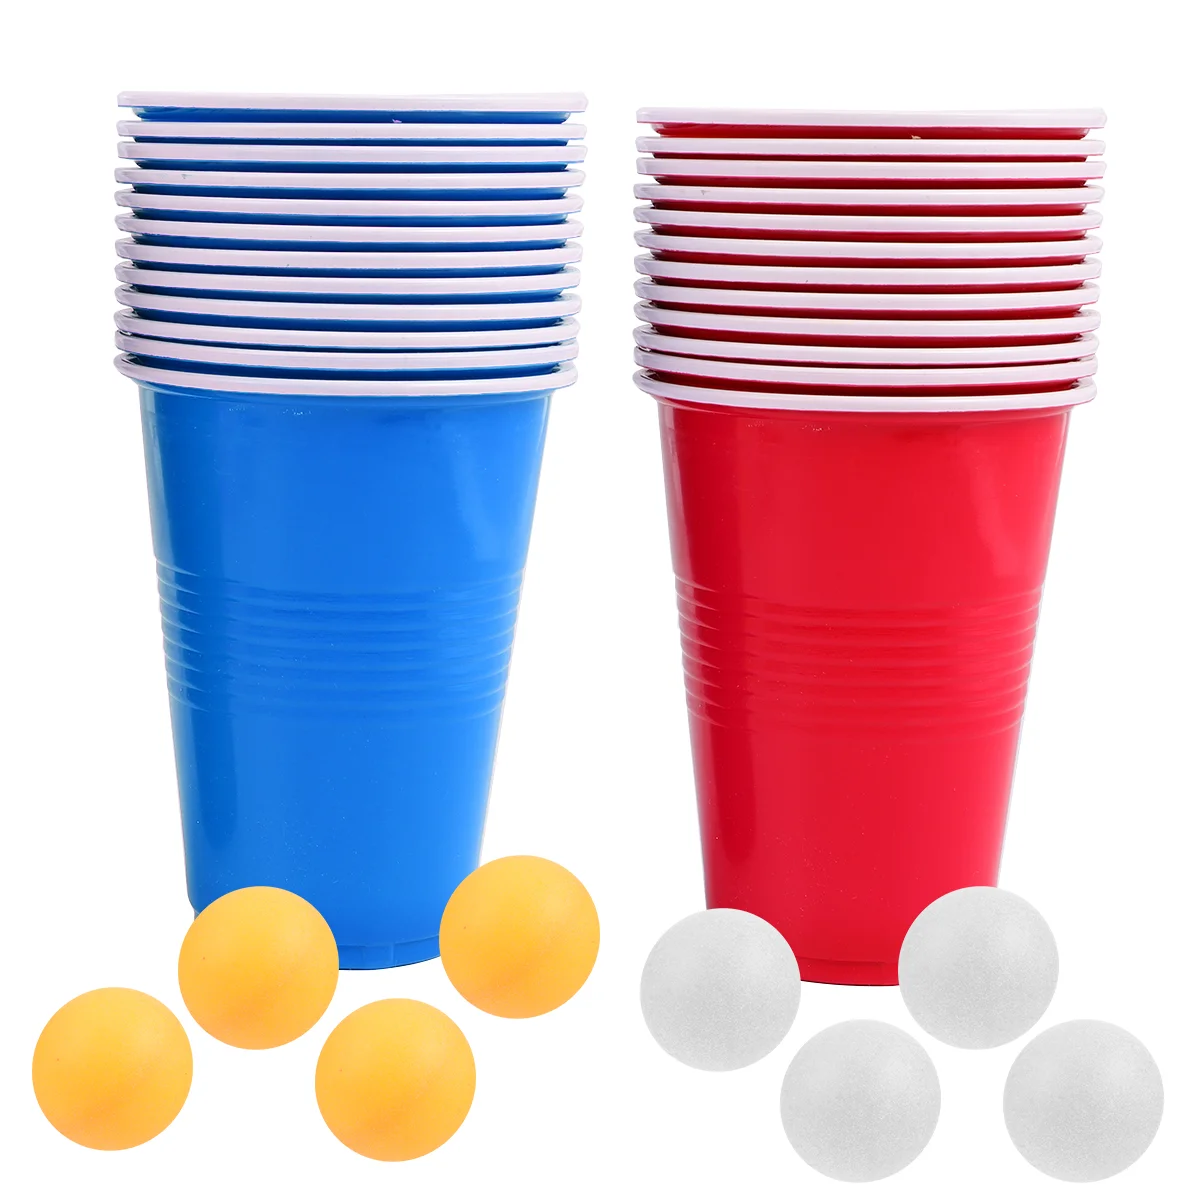 

Чашка для игры в понг, пивные чашки, стандартные чашки для воды, для паба, для задних ворот, для тенниса, одноразовые мини-очки для настольного выстрела